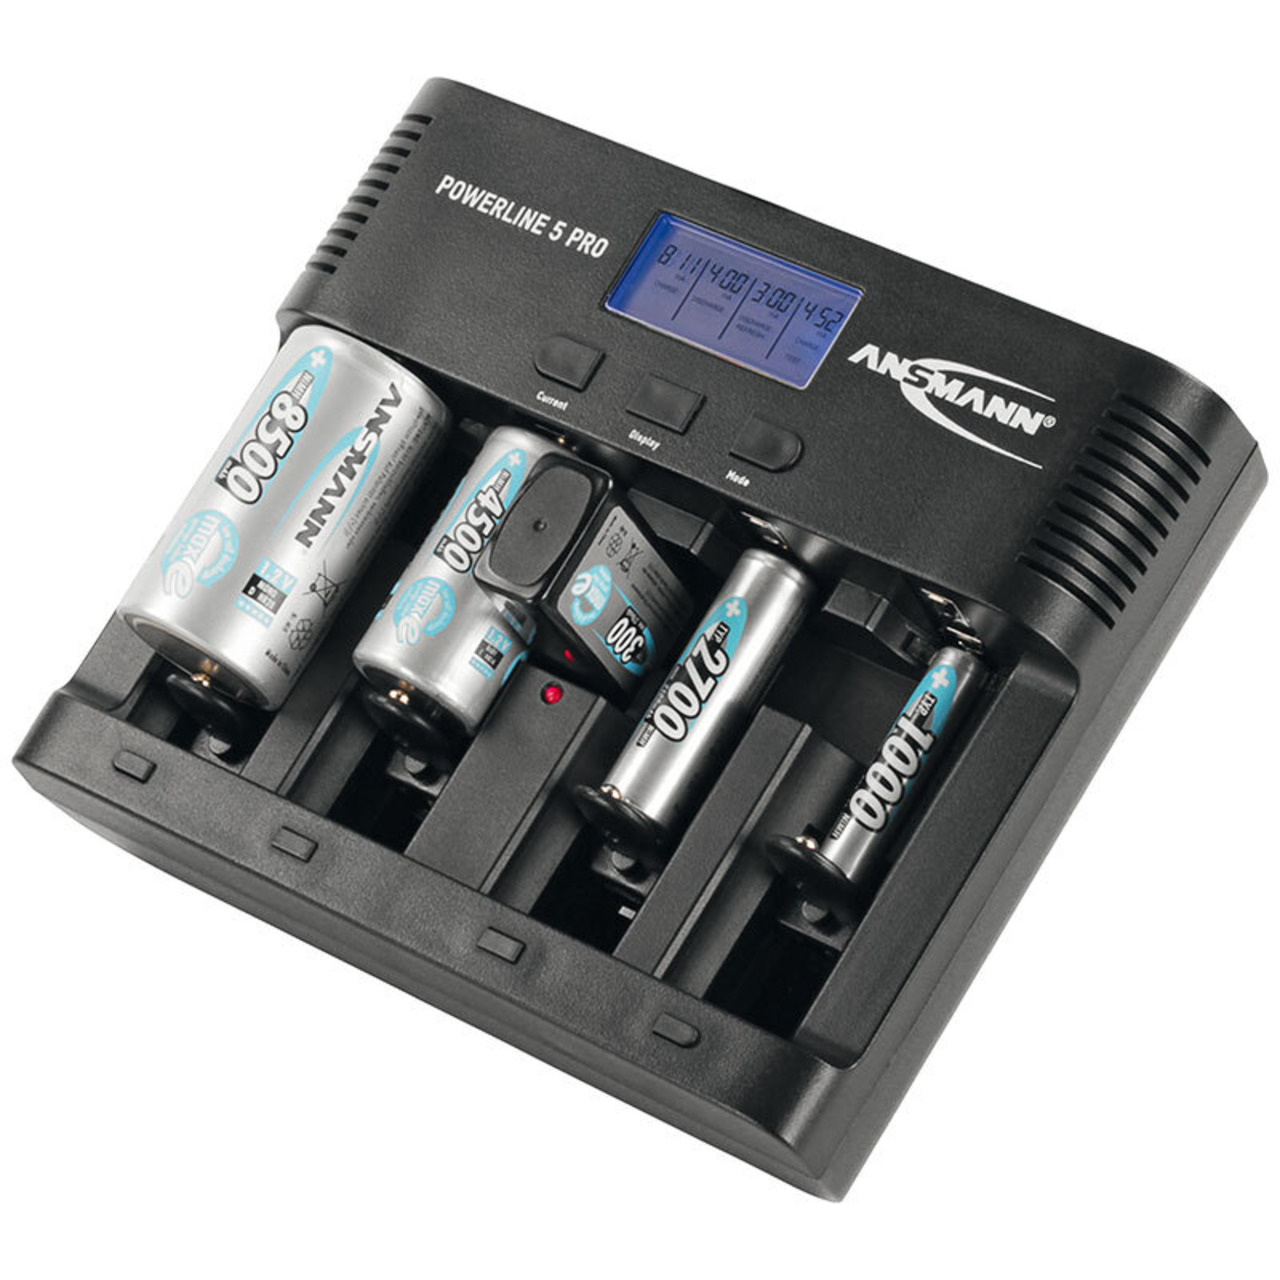 Ansmann Multifunktionsladegerät Powerline 5 pro mit USB-Ladeausgang unter Stromversorgung